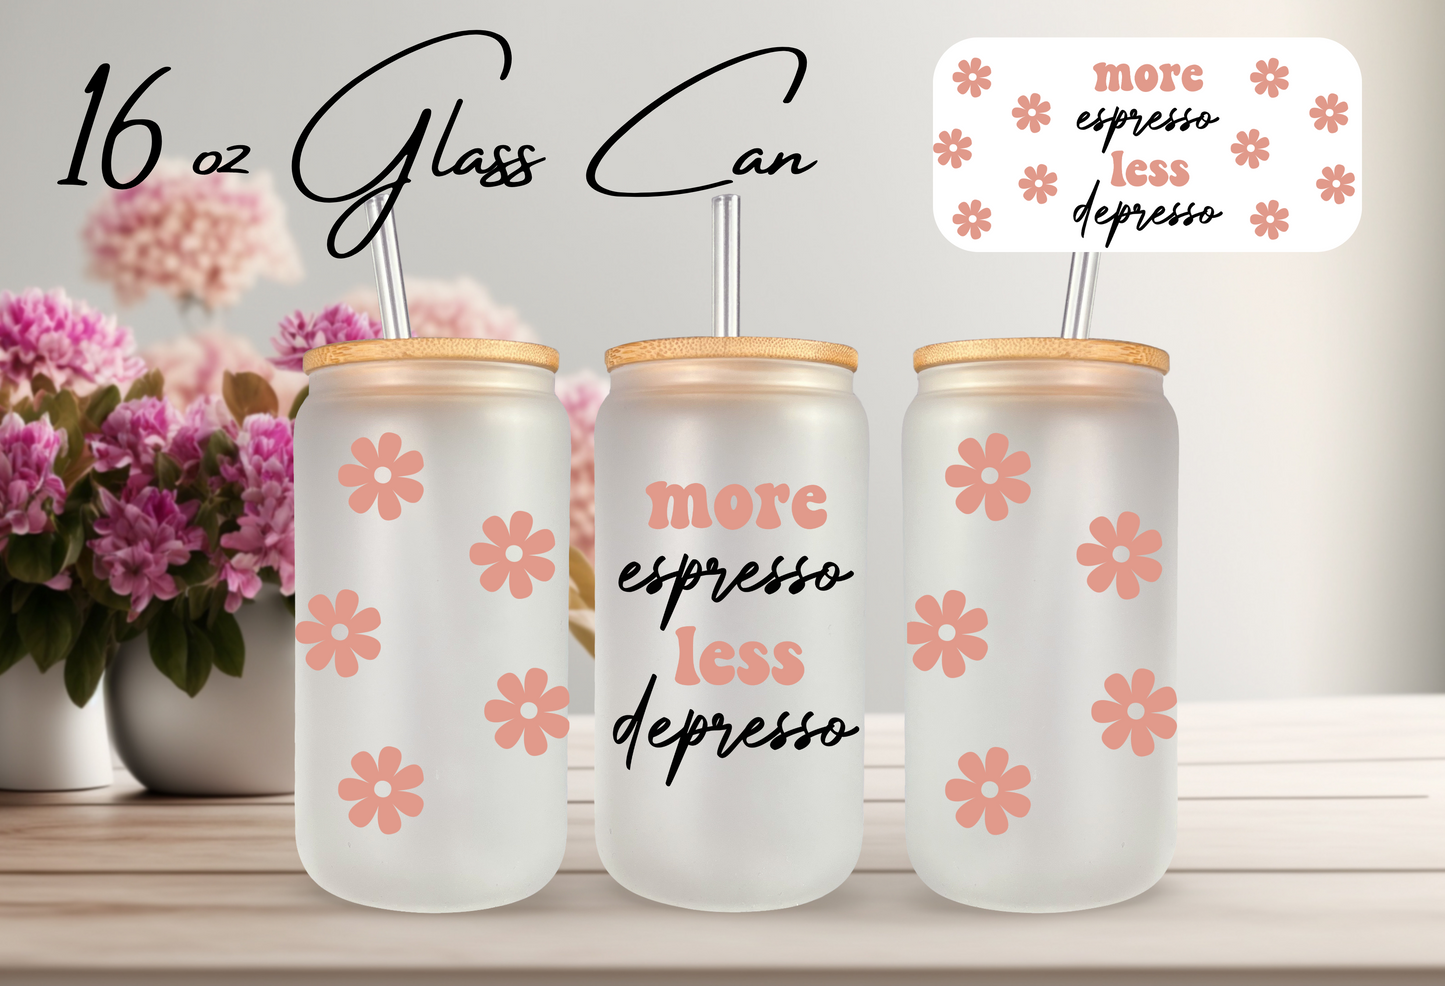 Glass Can - Coffee Theme "More Espresso Less Depresso"